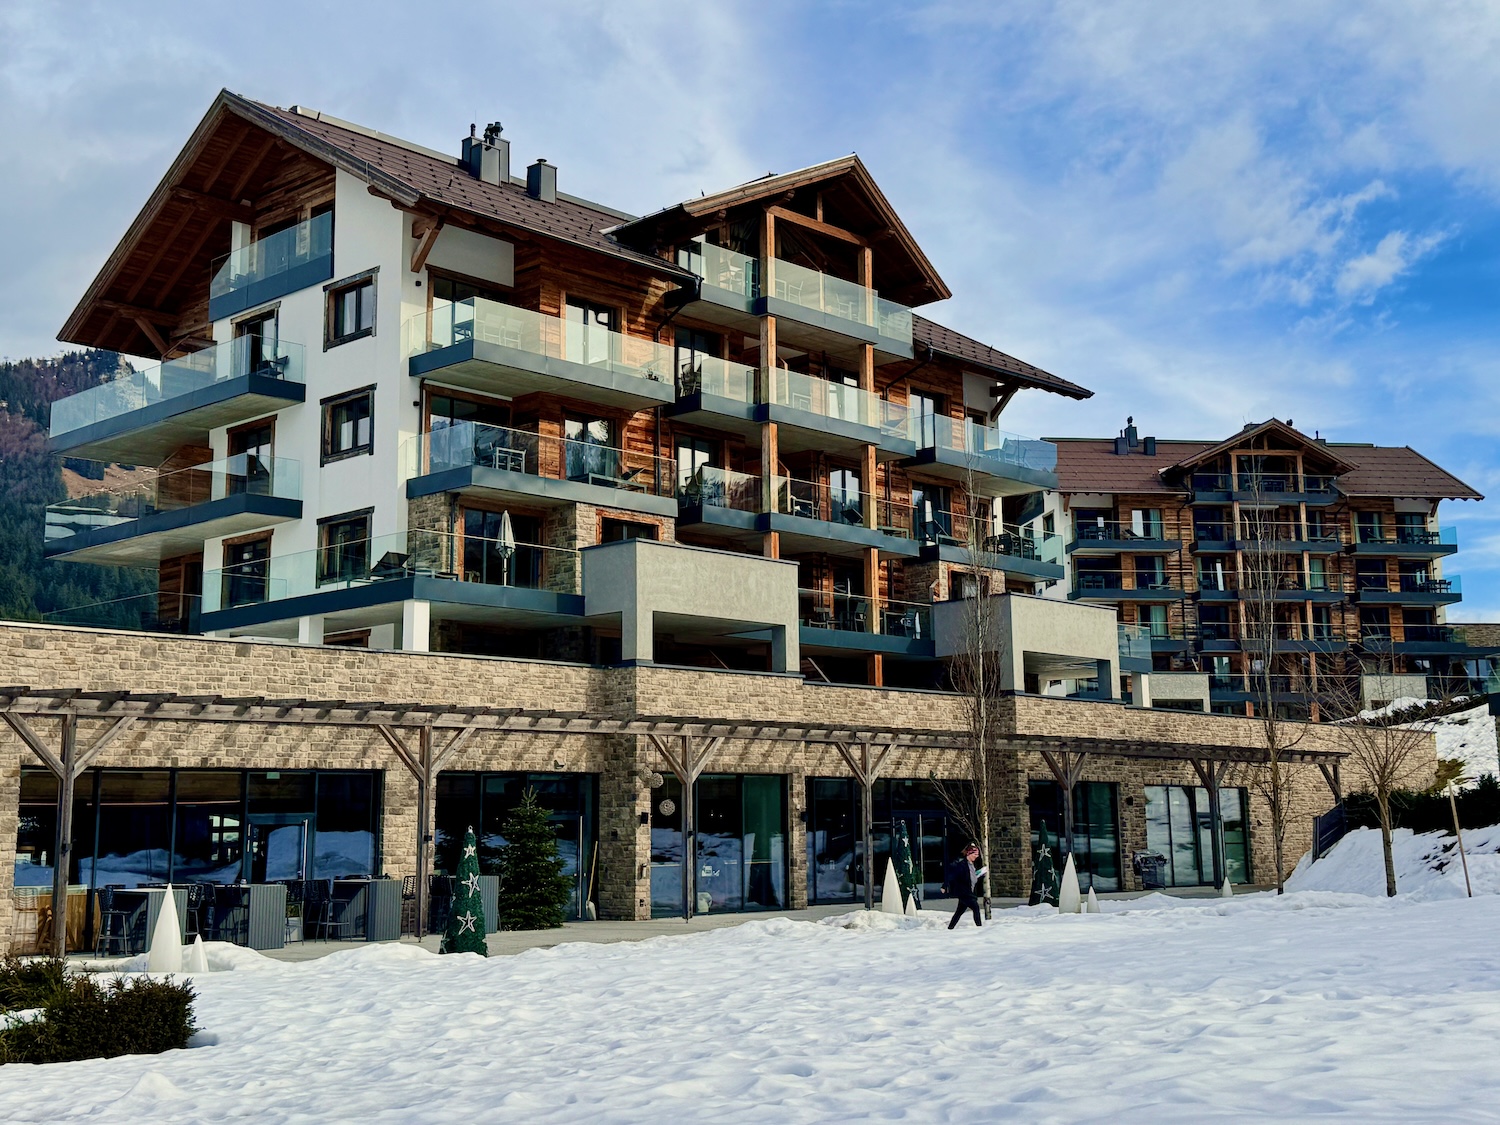 Het Vaya Fieberbrunn is zeker een van de mooiste hotels en resorts in het PillerseeTal. Foto: Sascha Tegtmeyer skivakantie in Fieberbrunn wintervakantie reisverslag ervaringsverslag ervaringen